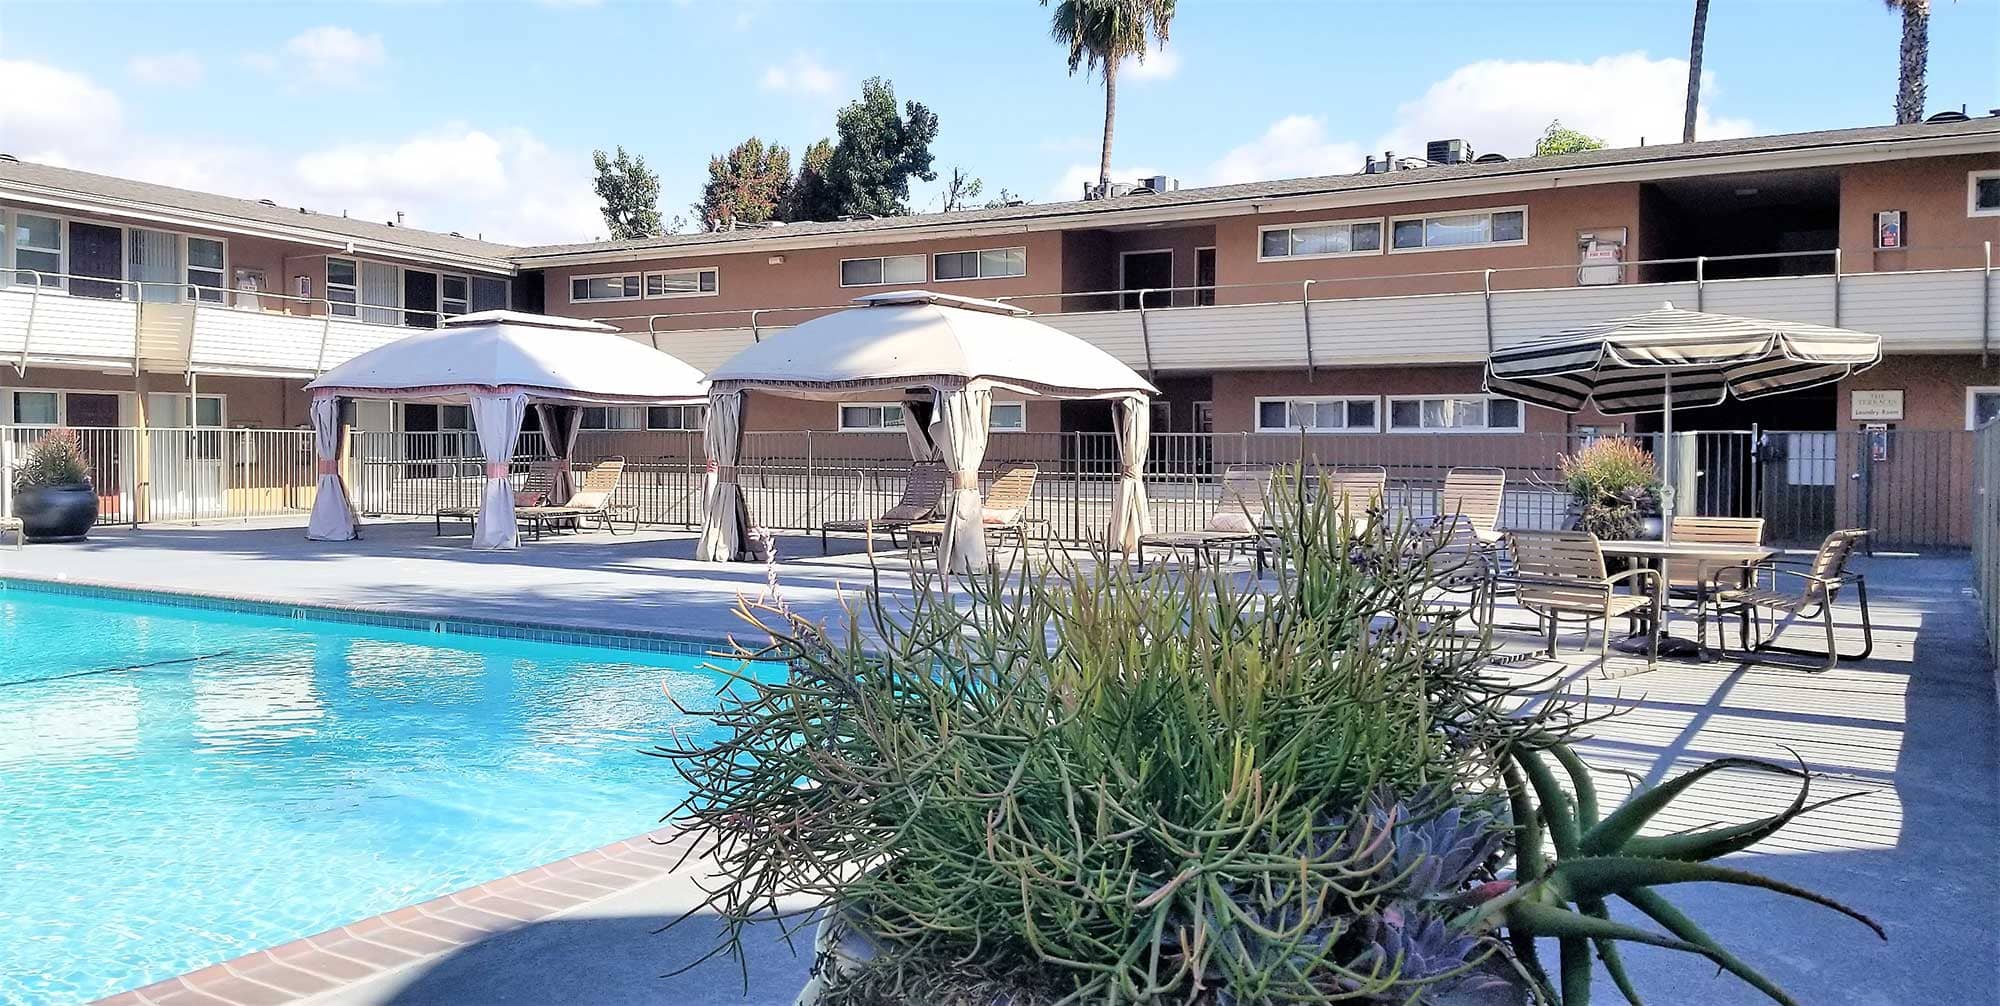 Terraces at South Pasadena Pool Photo